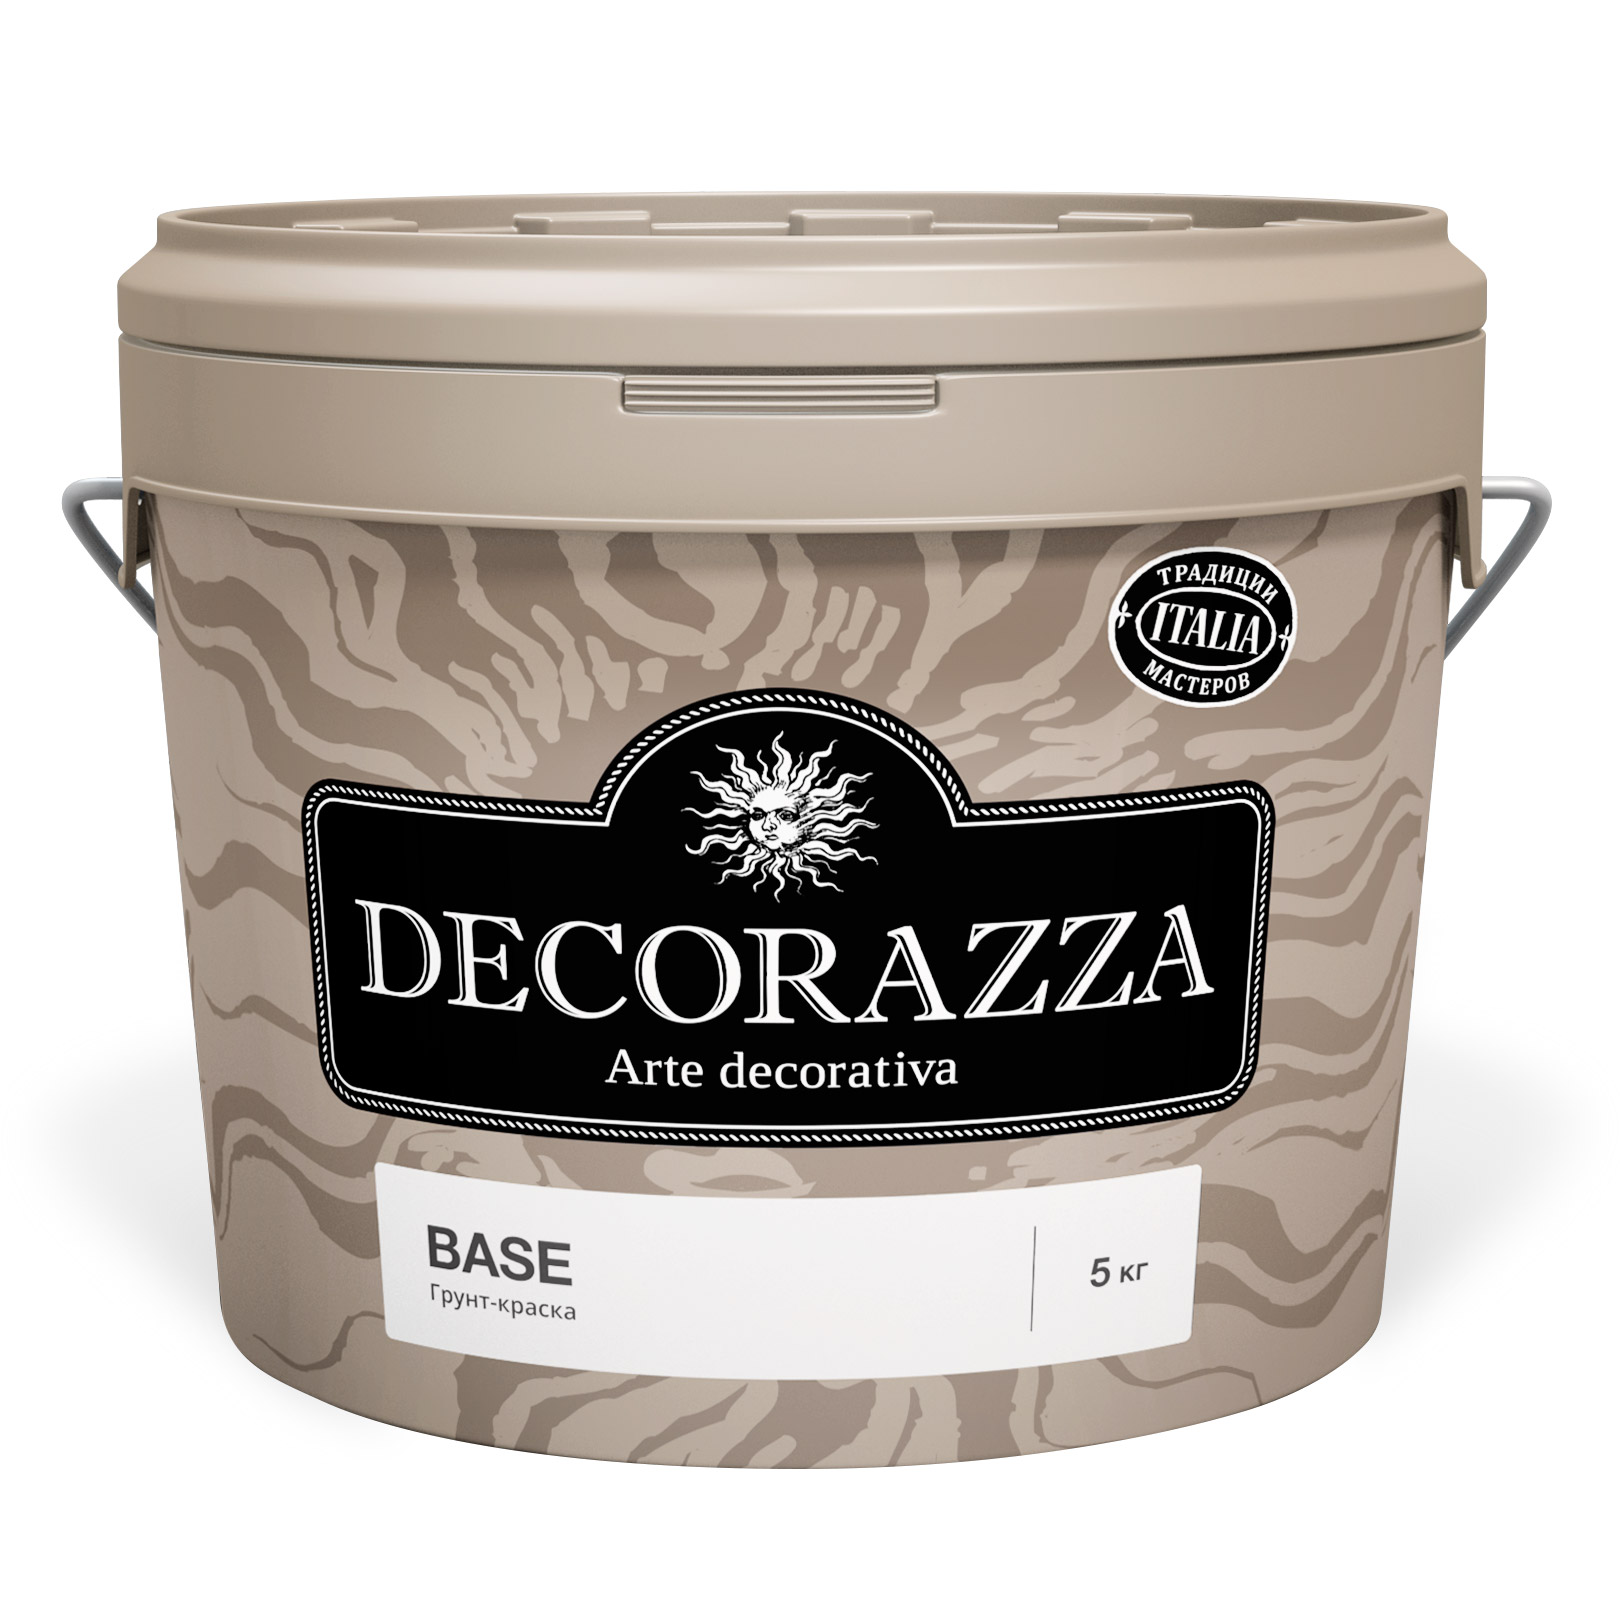 Грунтовка Decorazza Base DB1-040/27 лак decorazza fleur deco base incolore 1 л